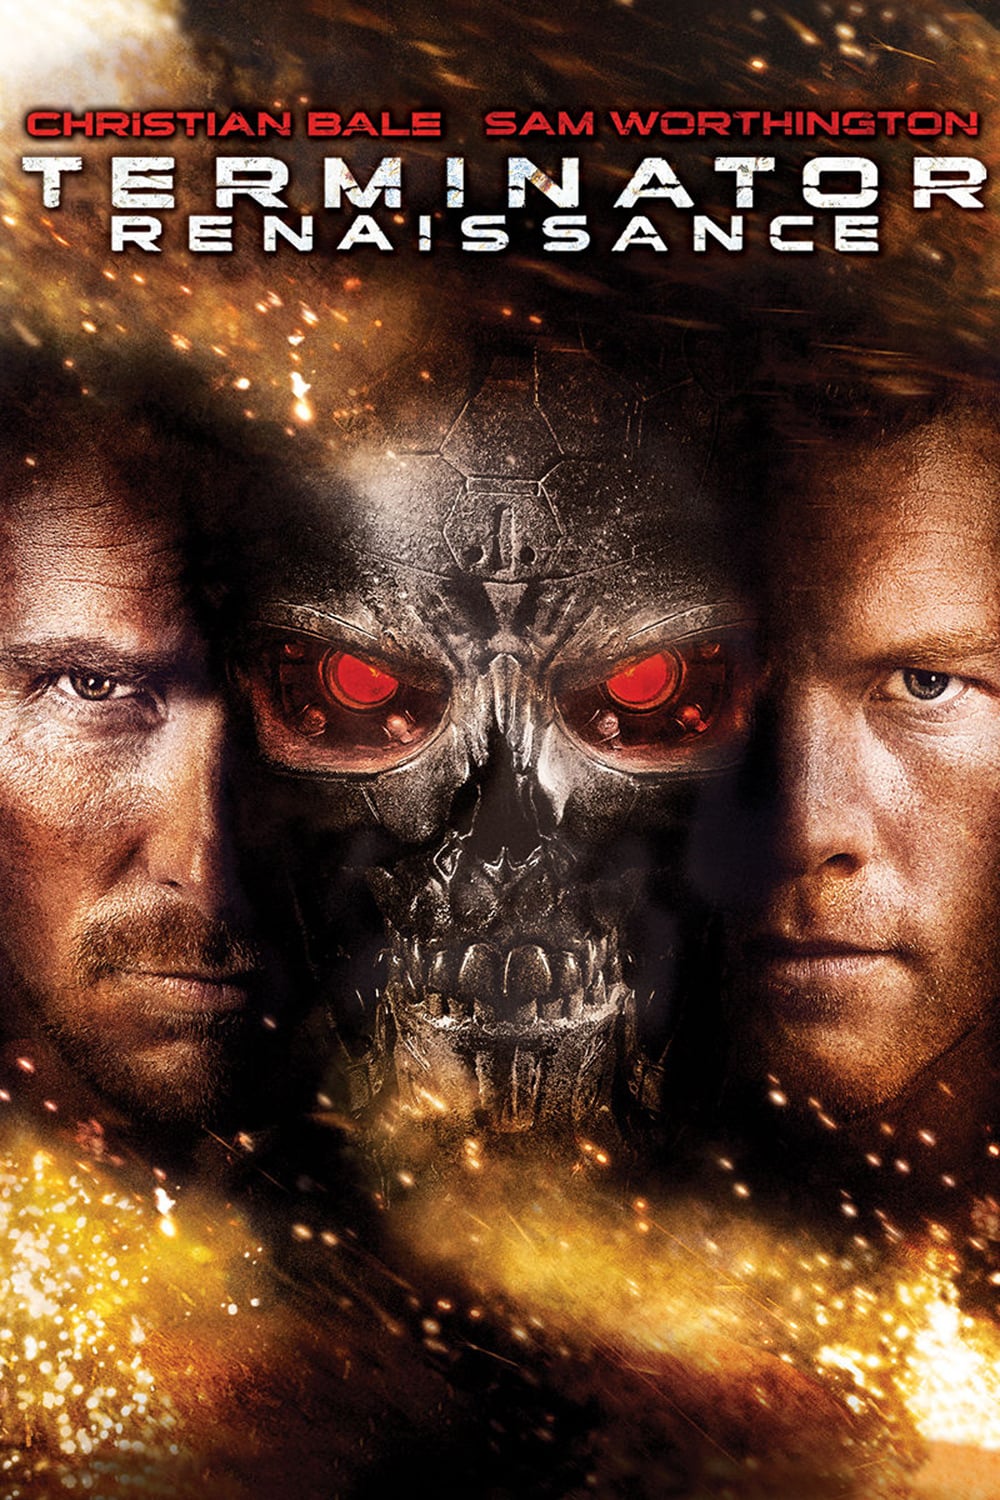 Affiche du film "Terminator Renaissance"